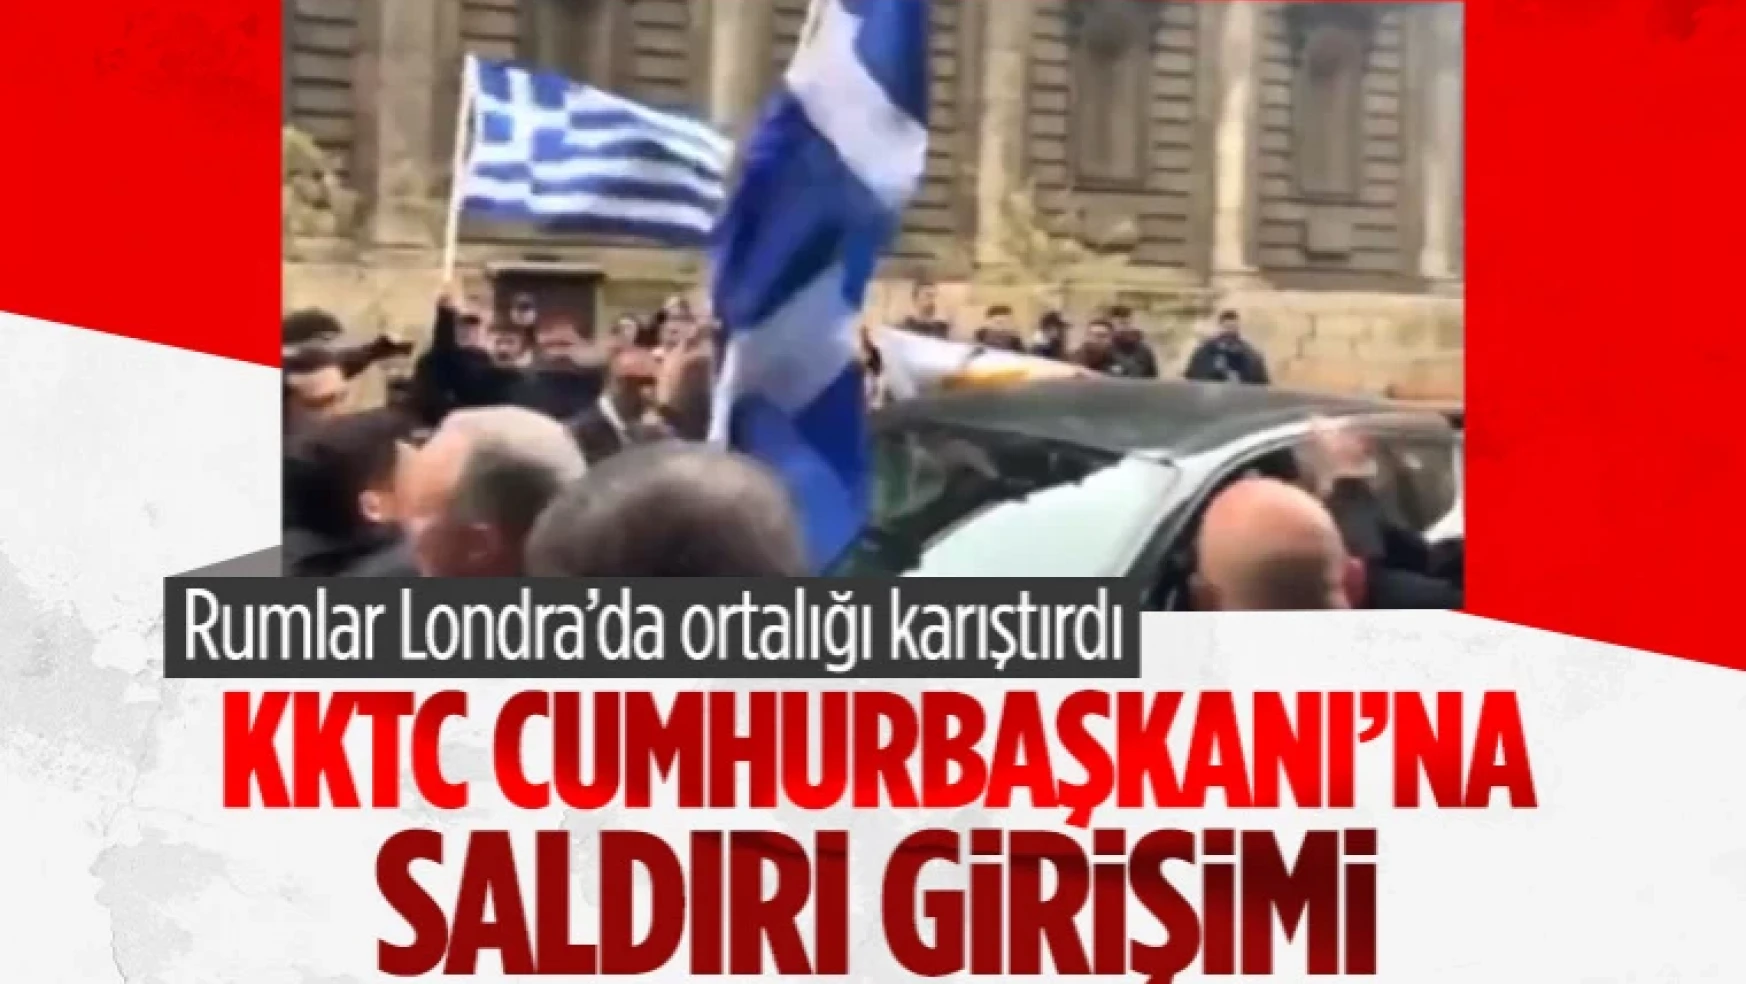 KKTC Cumhurbaşkanı Ersin Tatar'a Londra'da saldırı girişimi